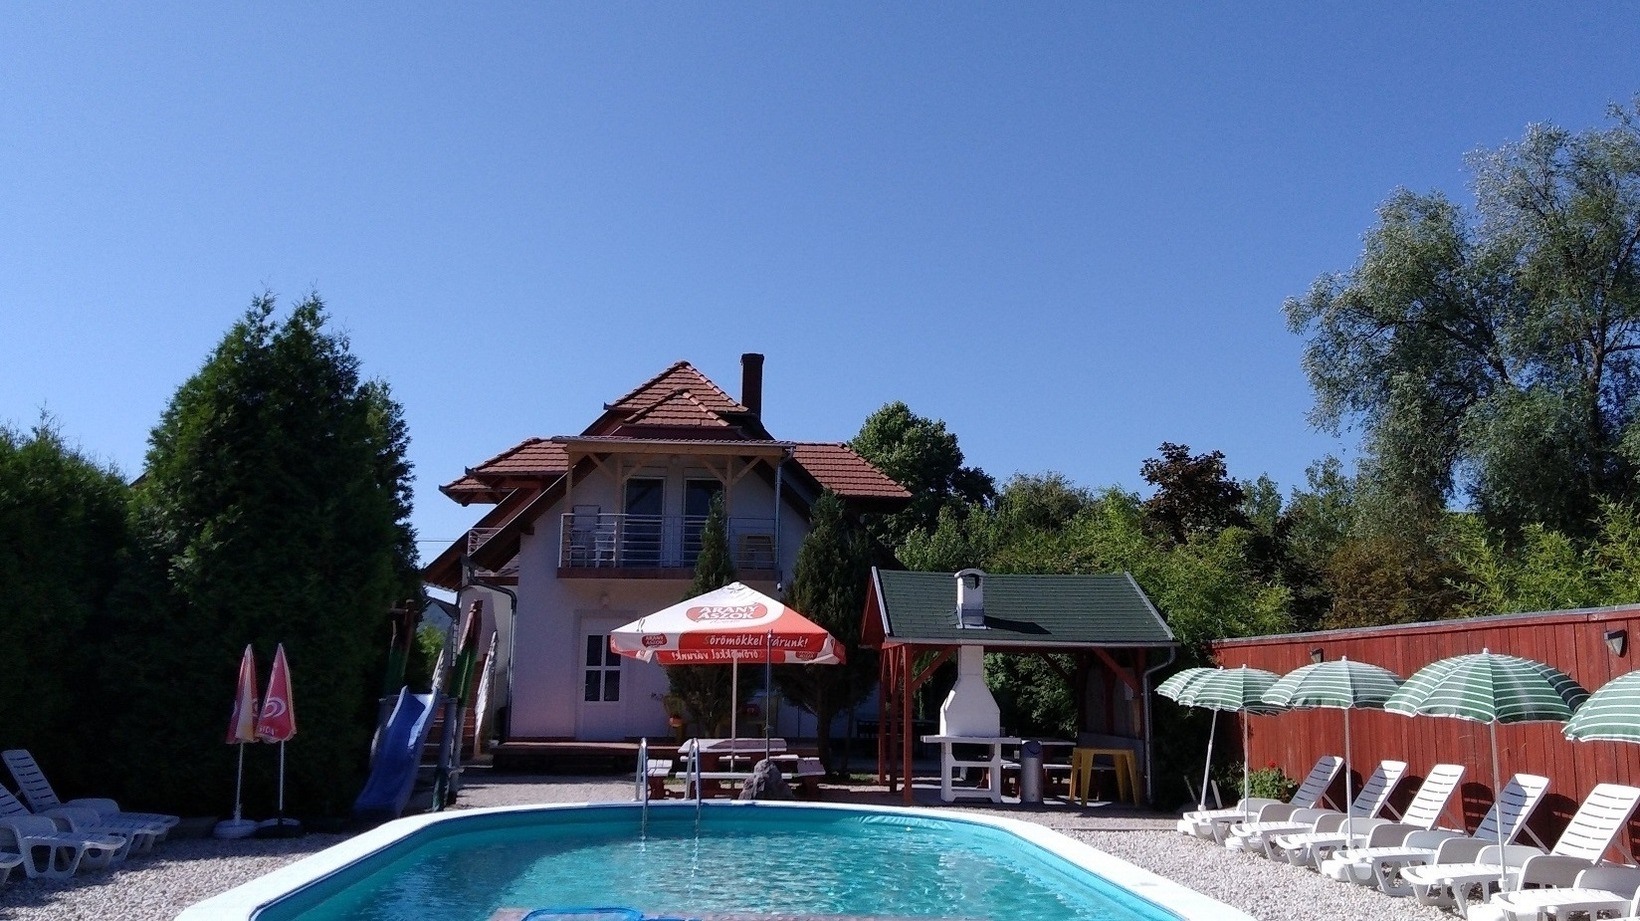 Ferienhaus direkt am See mit Pool, WLAN, Spielplat Ferienhaus in Balatonmáriafürdo